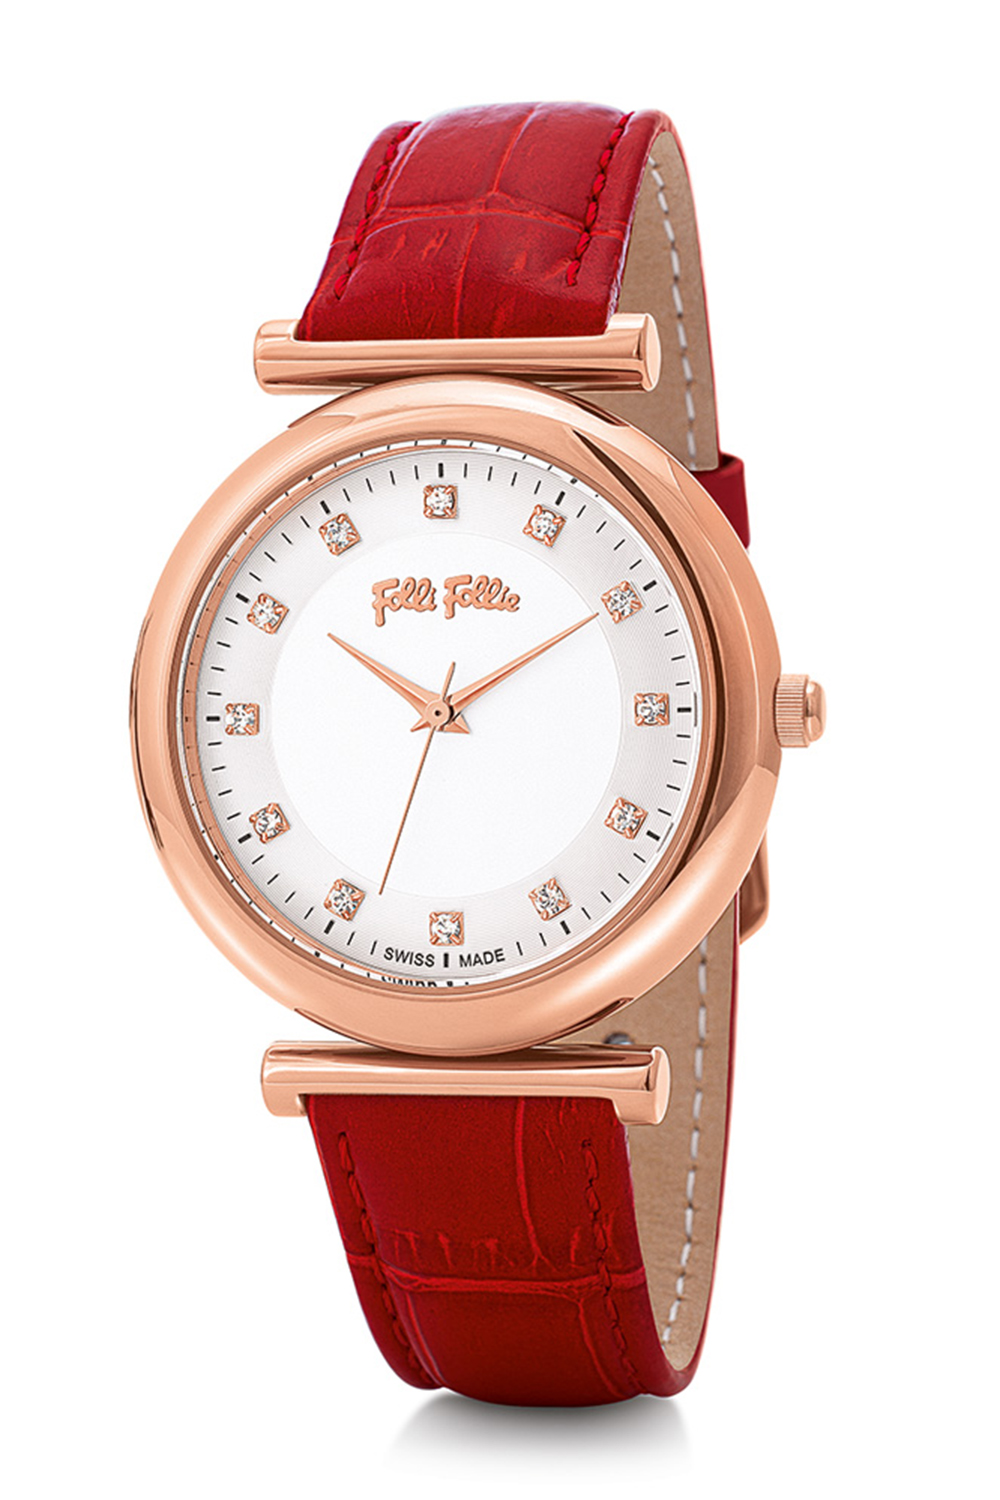 FOLLI FOLLIE – Γυναικείο ρολόι με δερμάτινο λουράκι FOLLI FOLLIE SPARKLE CHIC κόκκινο WF16R023SSS-RE